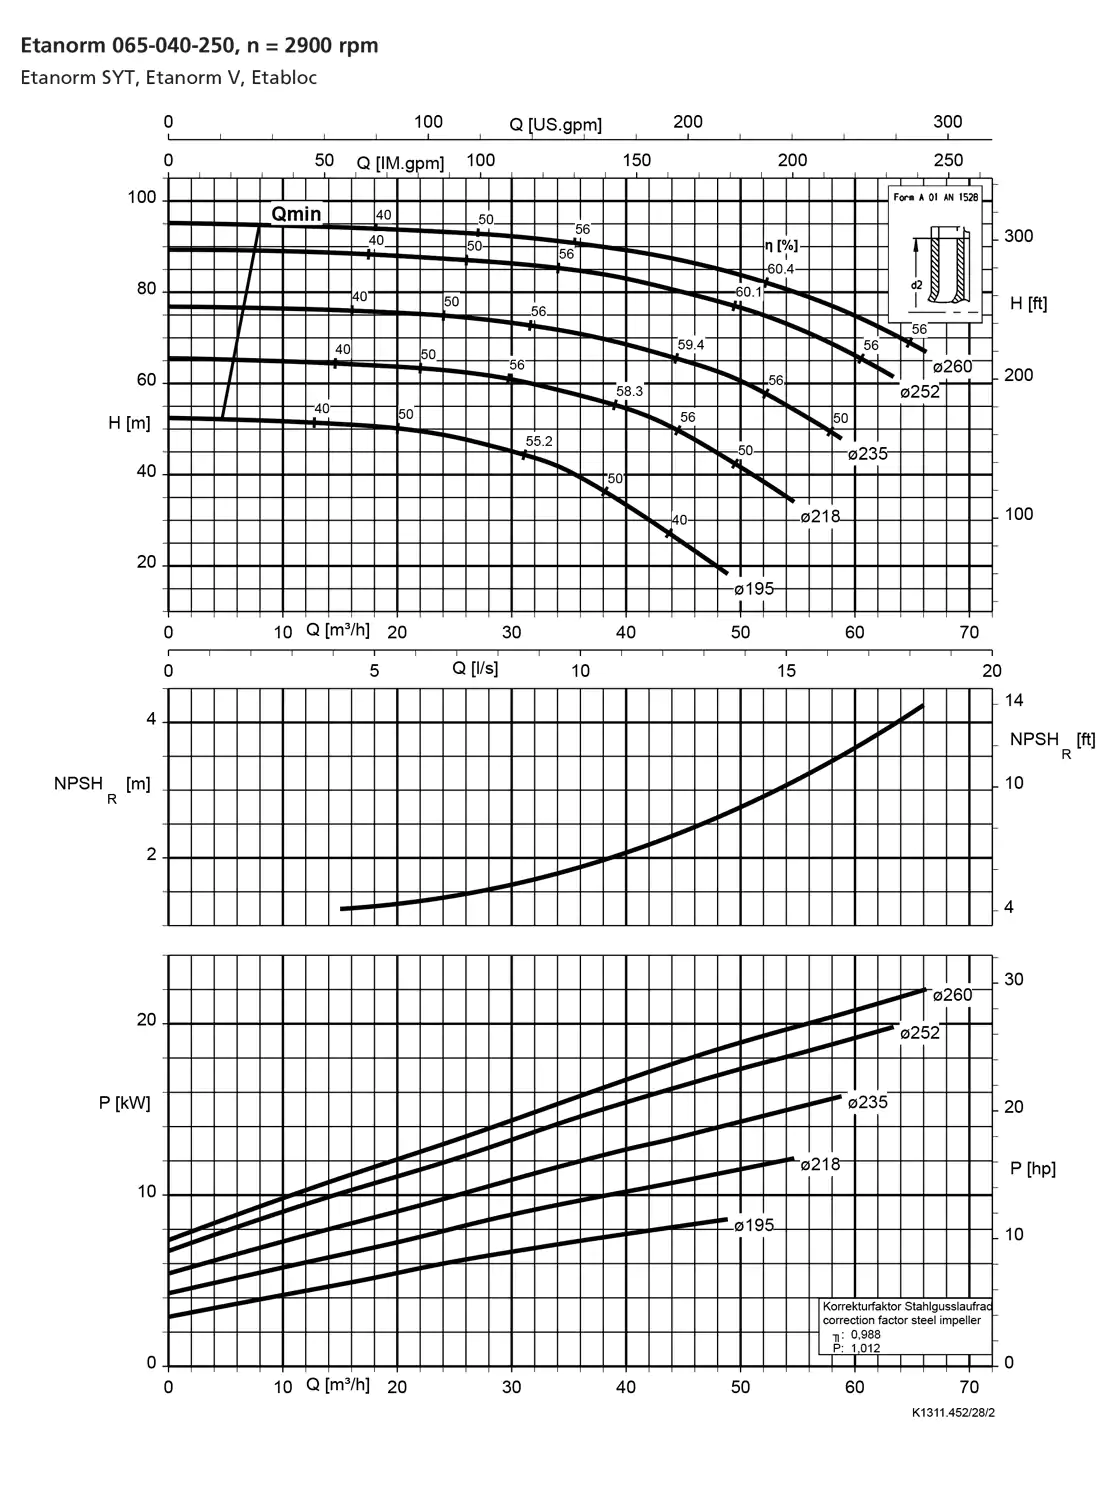 نمودار-کارکرد-پمپ-etanorm-syt-65-040-250-2900